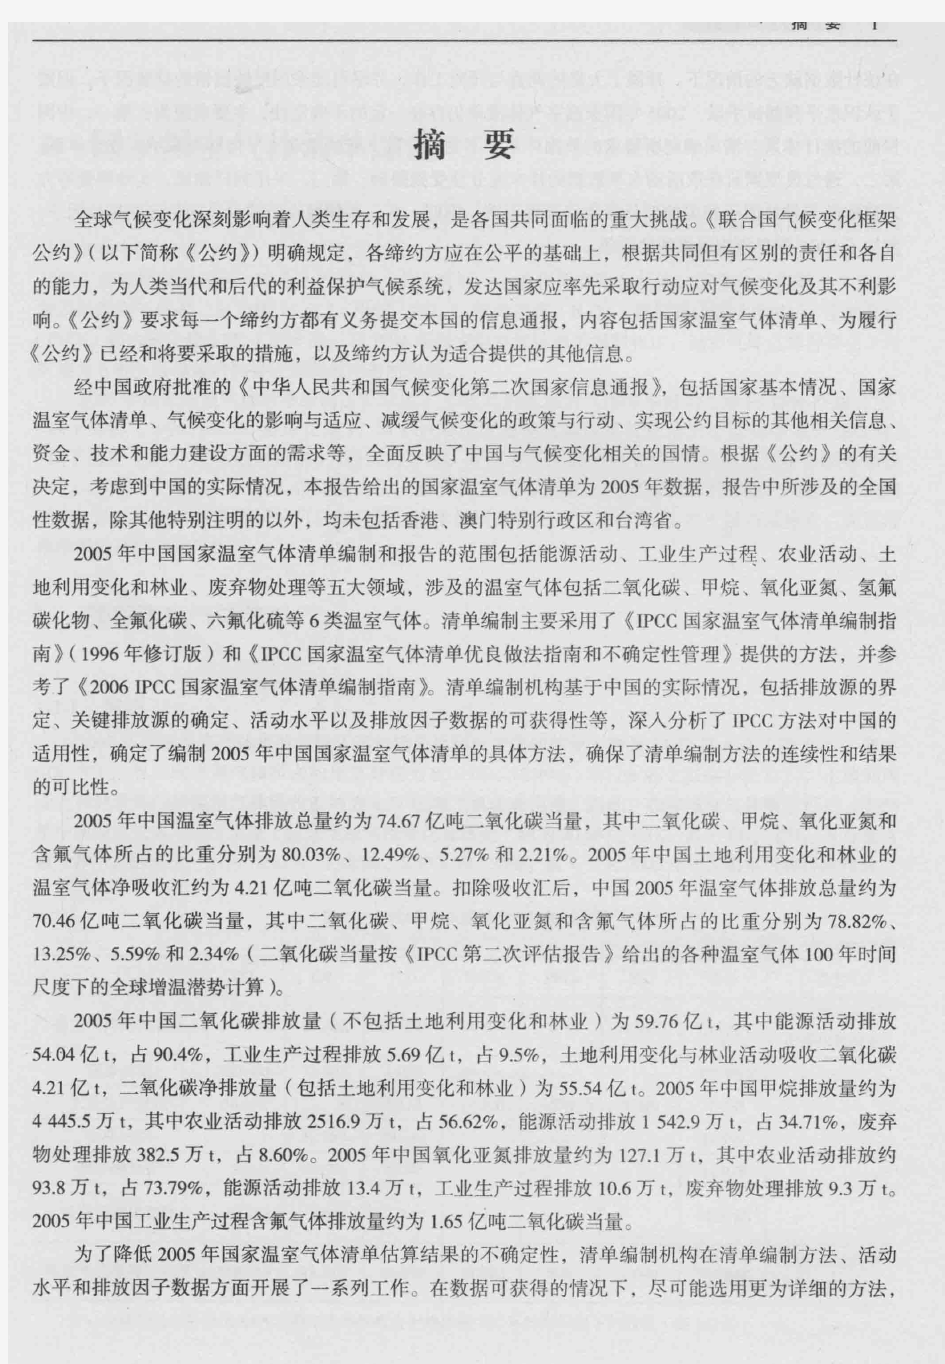 中国温室气体清单研究(部分一)P1-P17